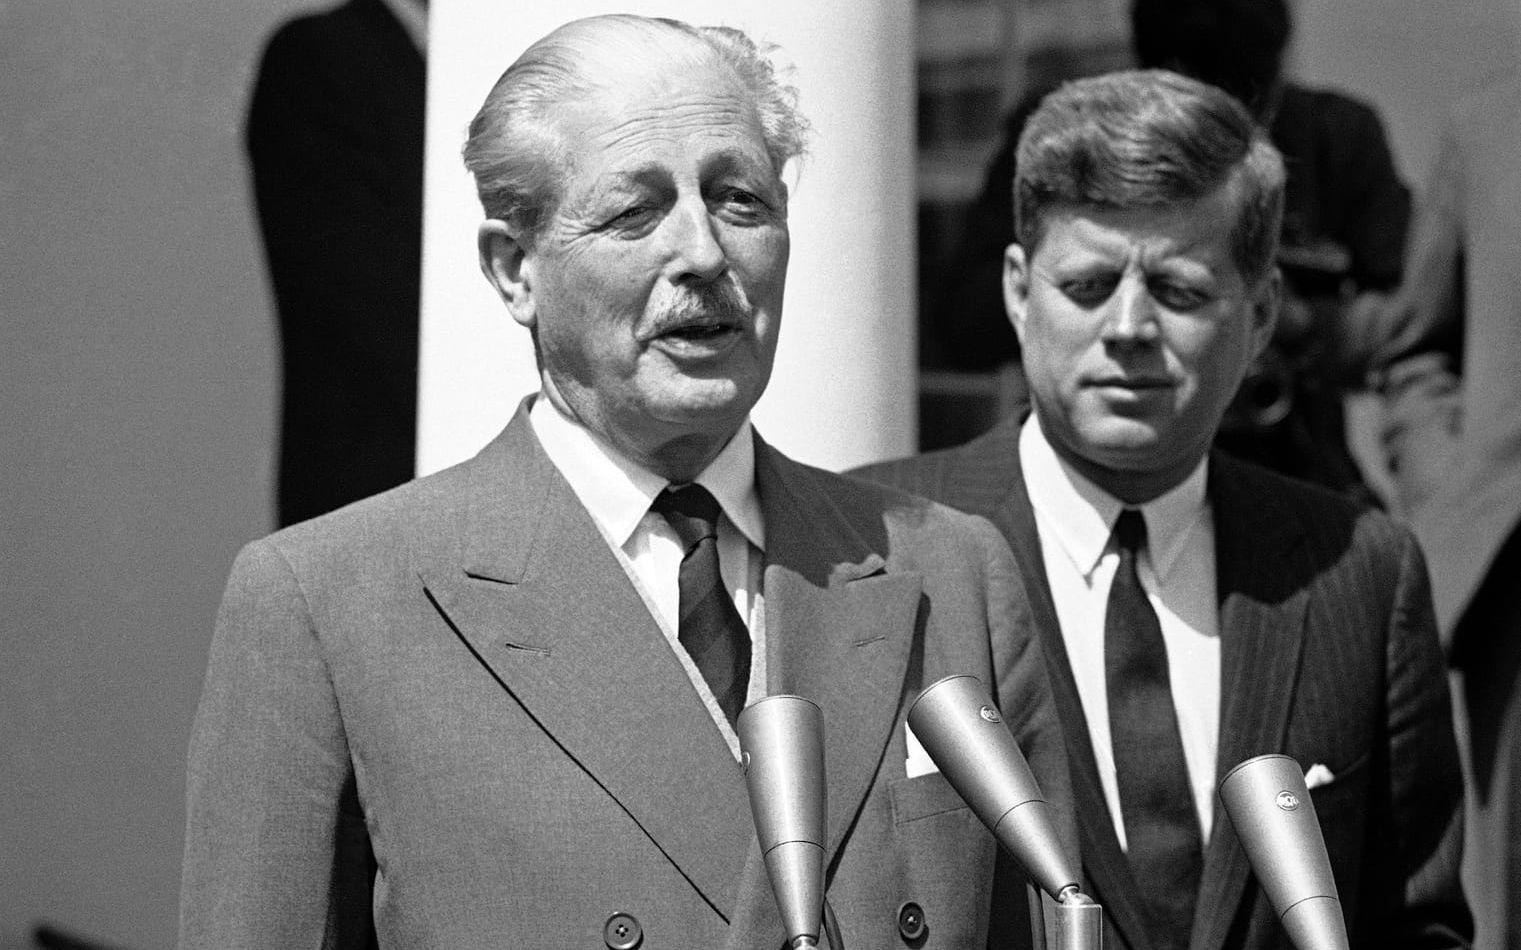 När Anthony Eden avgick blev Harold Macmillan ny premiärminister. Här fotograferad tillsammans med USA:s president John F. Kennedy utanför Vita huset 8 april 1961.